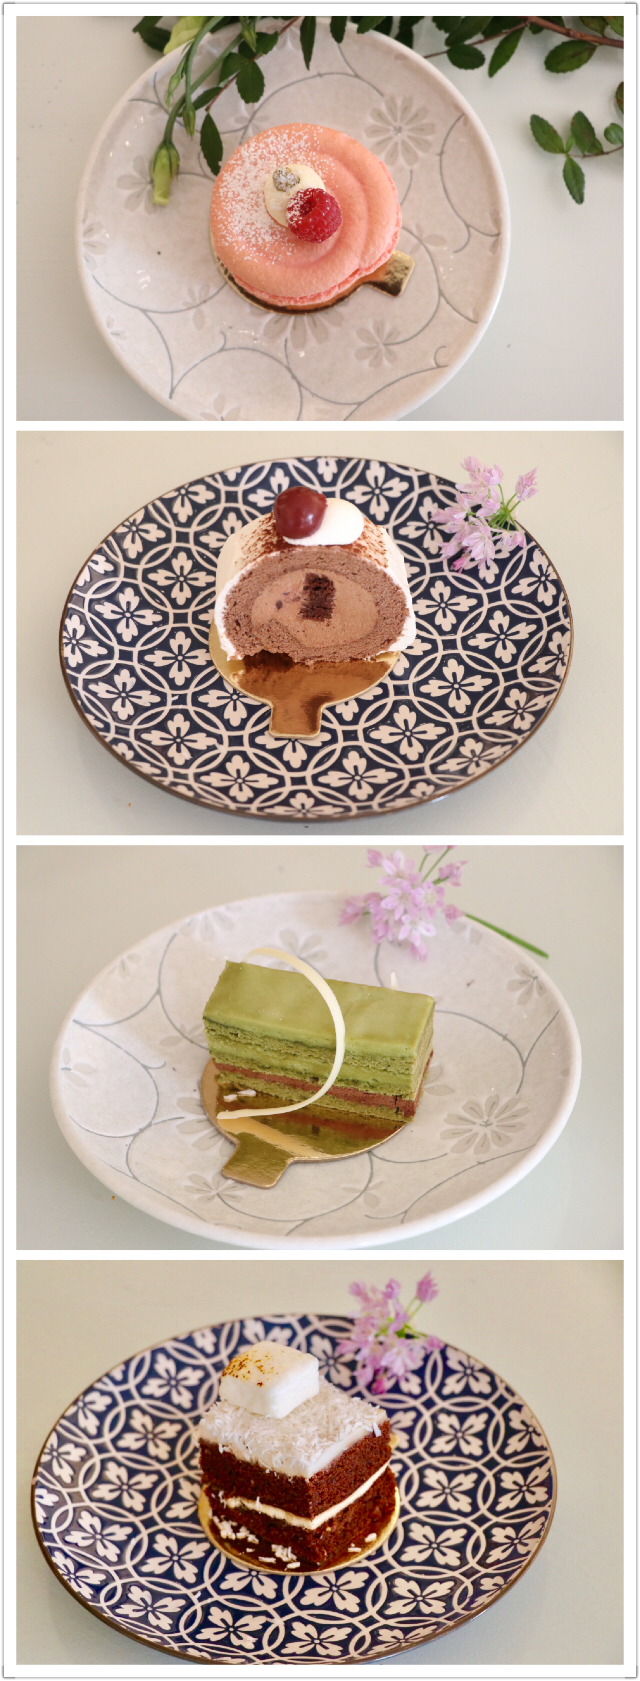 星级酒店甜品主厨教你做日式无蛋芝士蛋糕